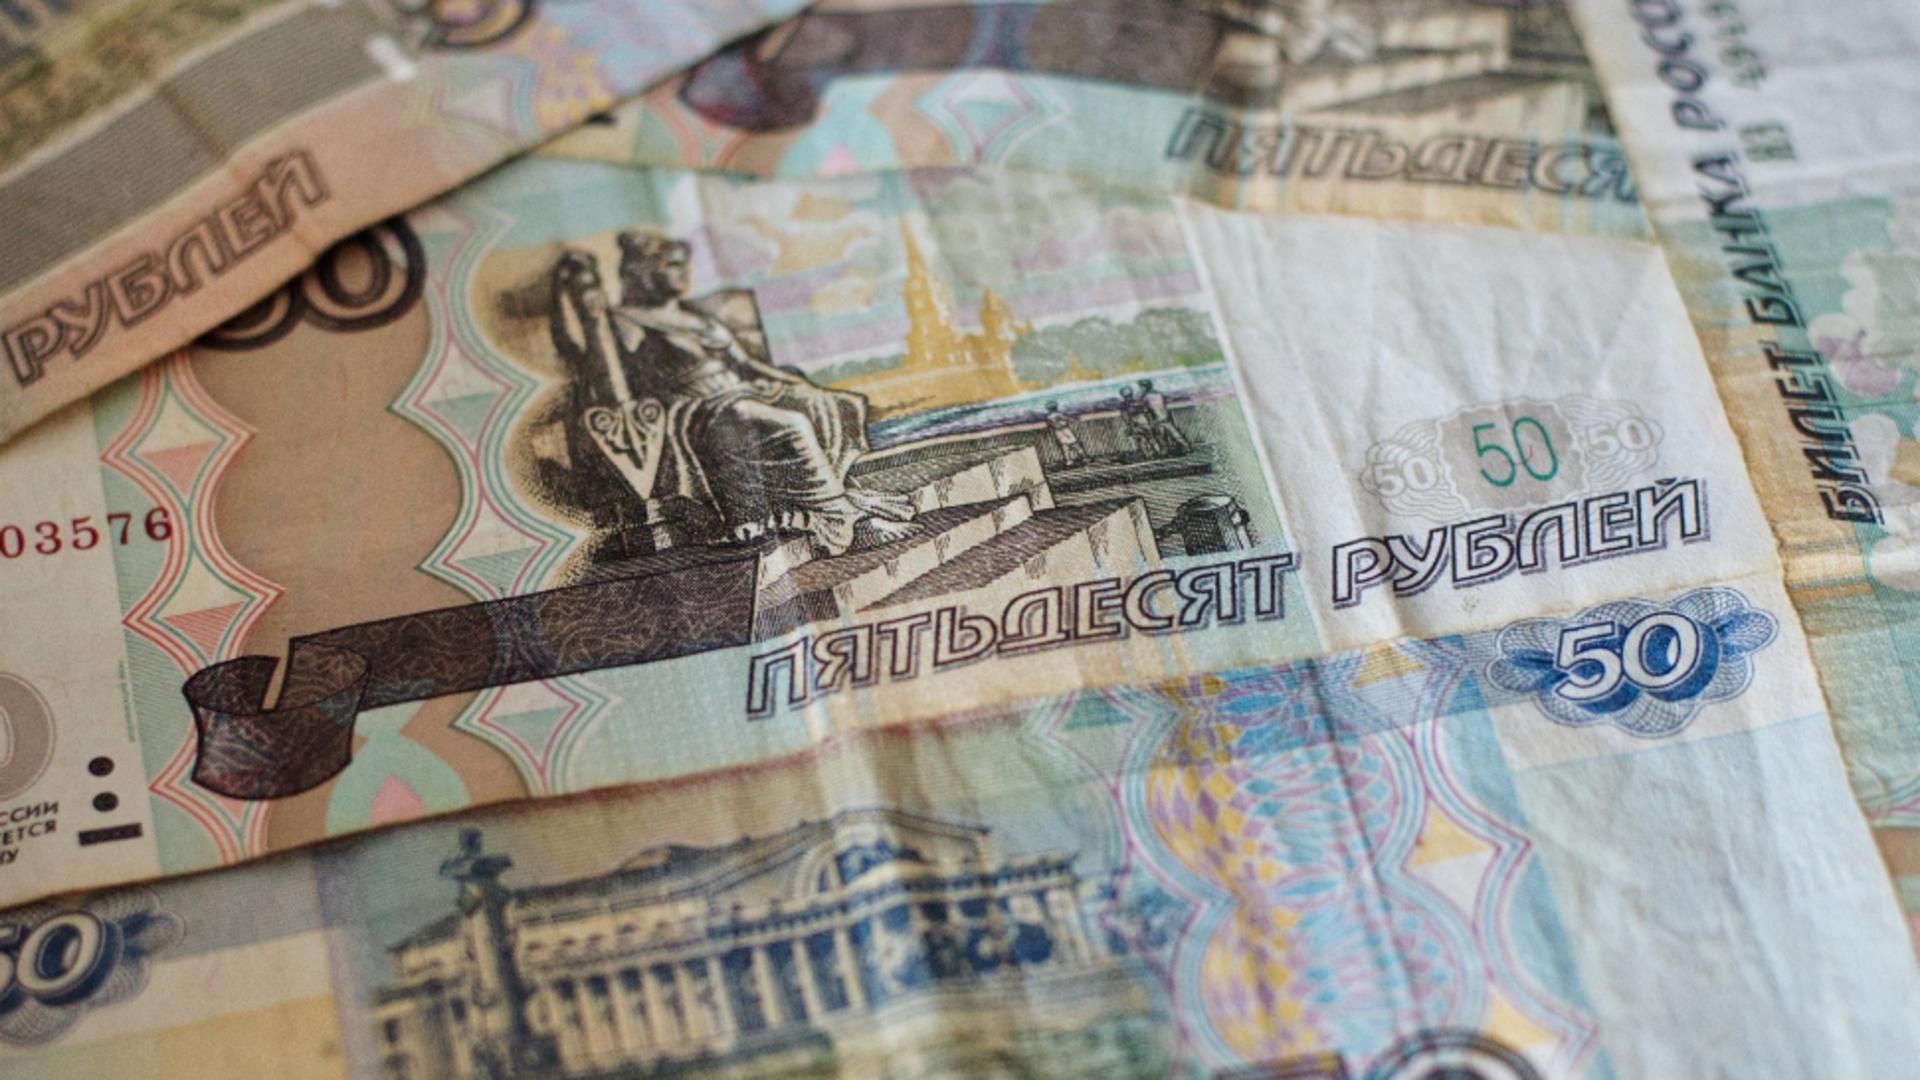 Lovitura de stat a aruncat în aer rubla rusească. Marile companii, la pământ din cauza revoltei